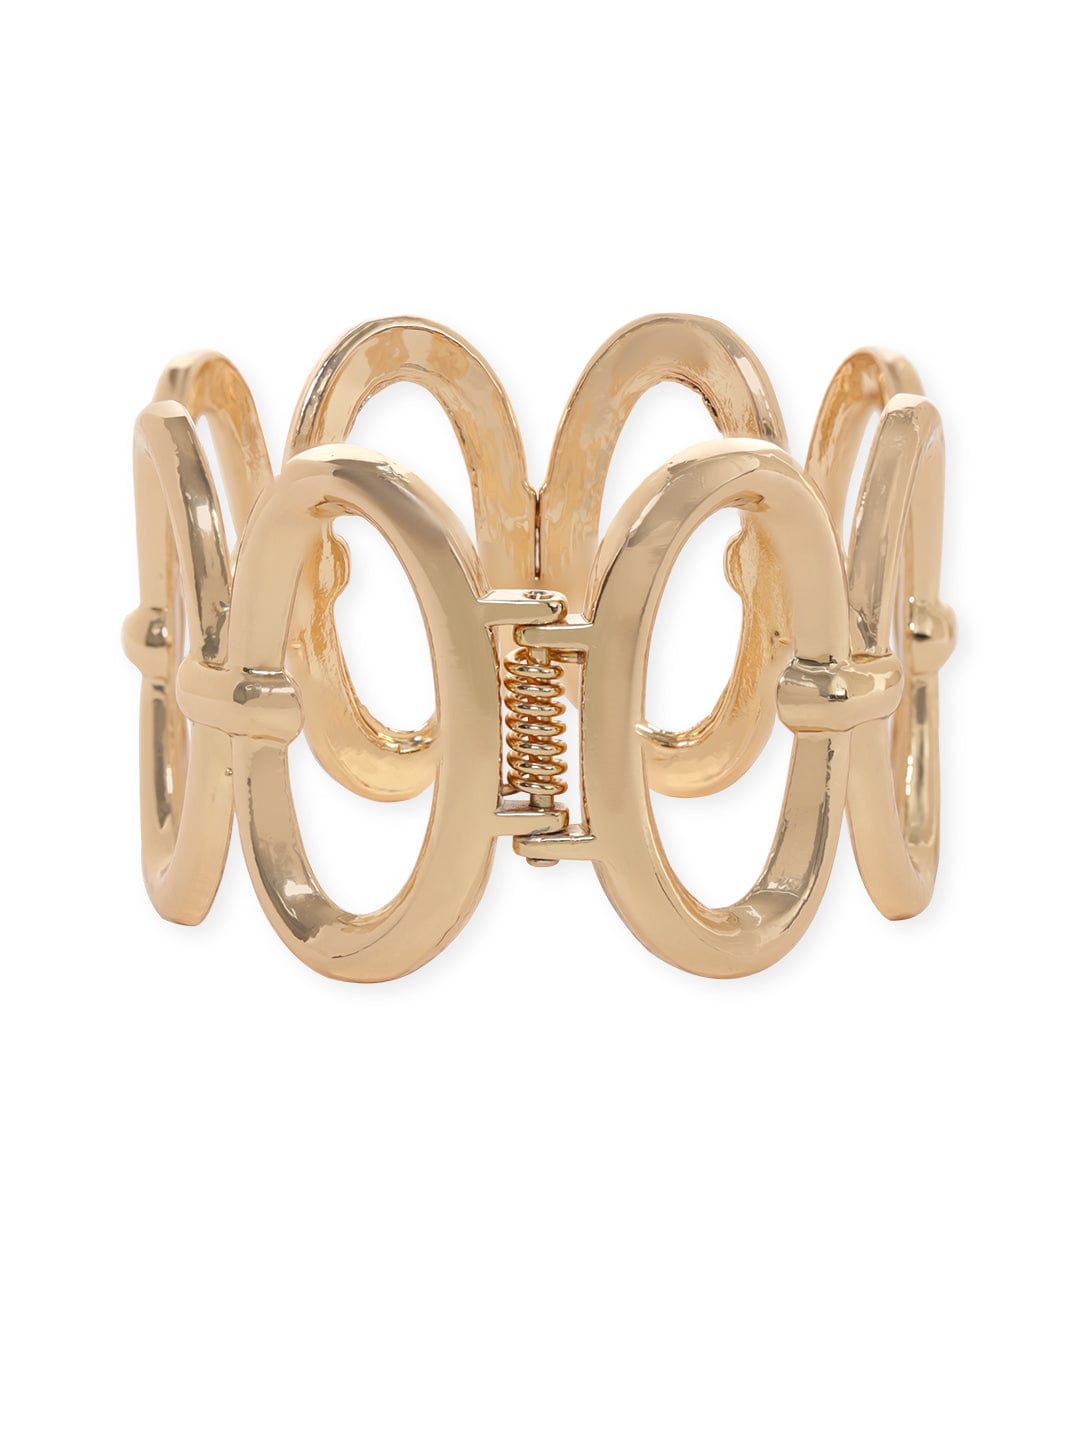 Rubans Vogusih Gold Plated Oval Pattern Statement Bracelet Bangles & Bracelets